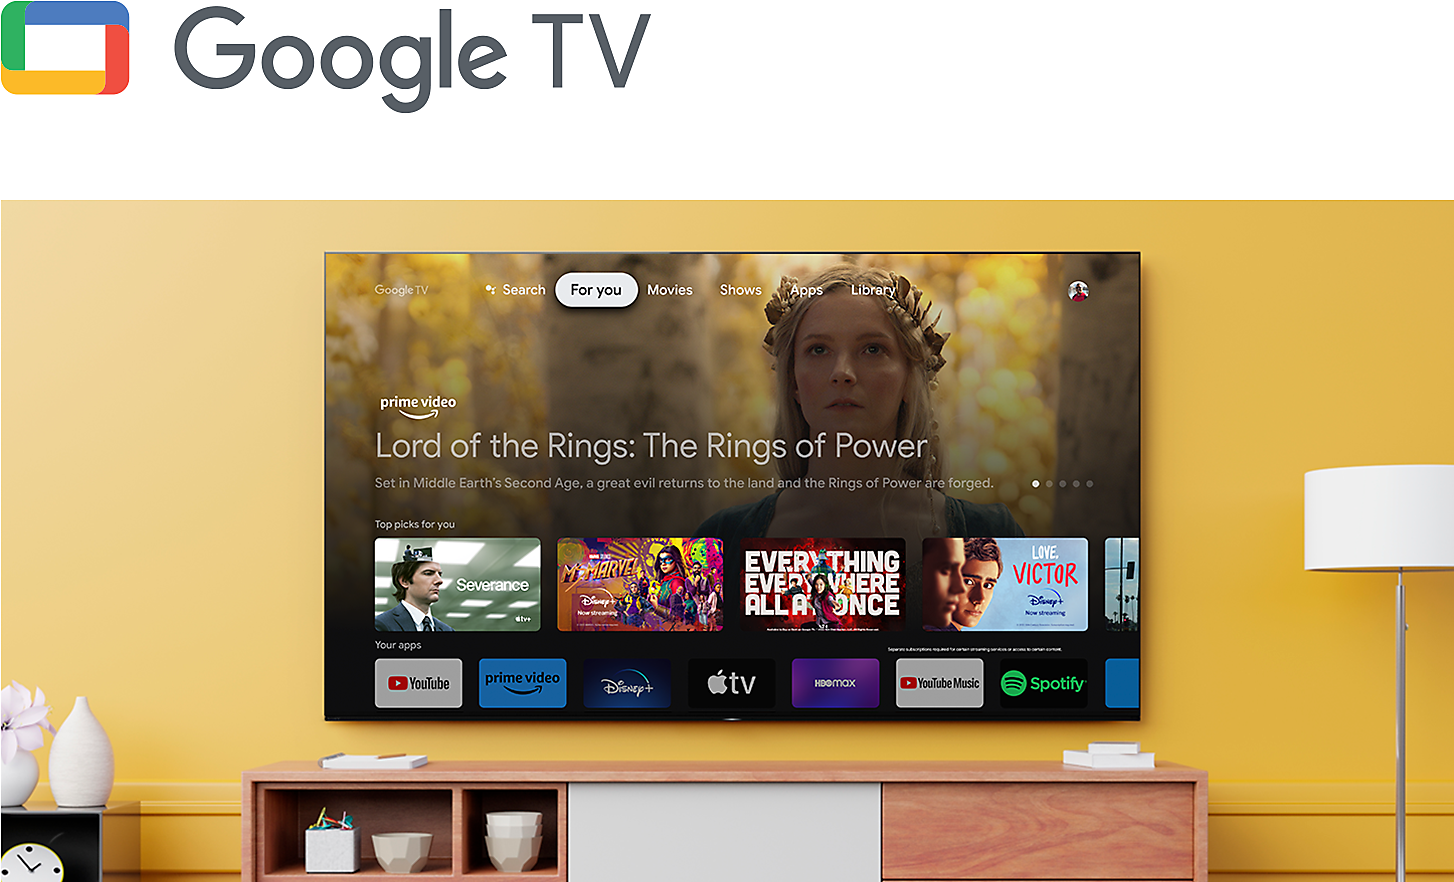 Логотип Google TV над гостиной с телевизором BRAVIA на стене, на котором изображены различные развлекательные приложения и сервисы потокового воспроизведения